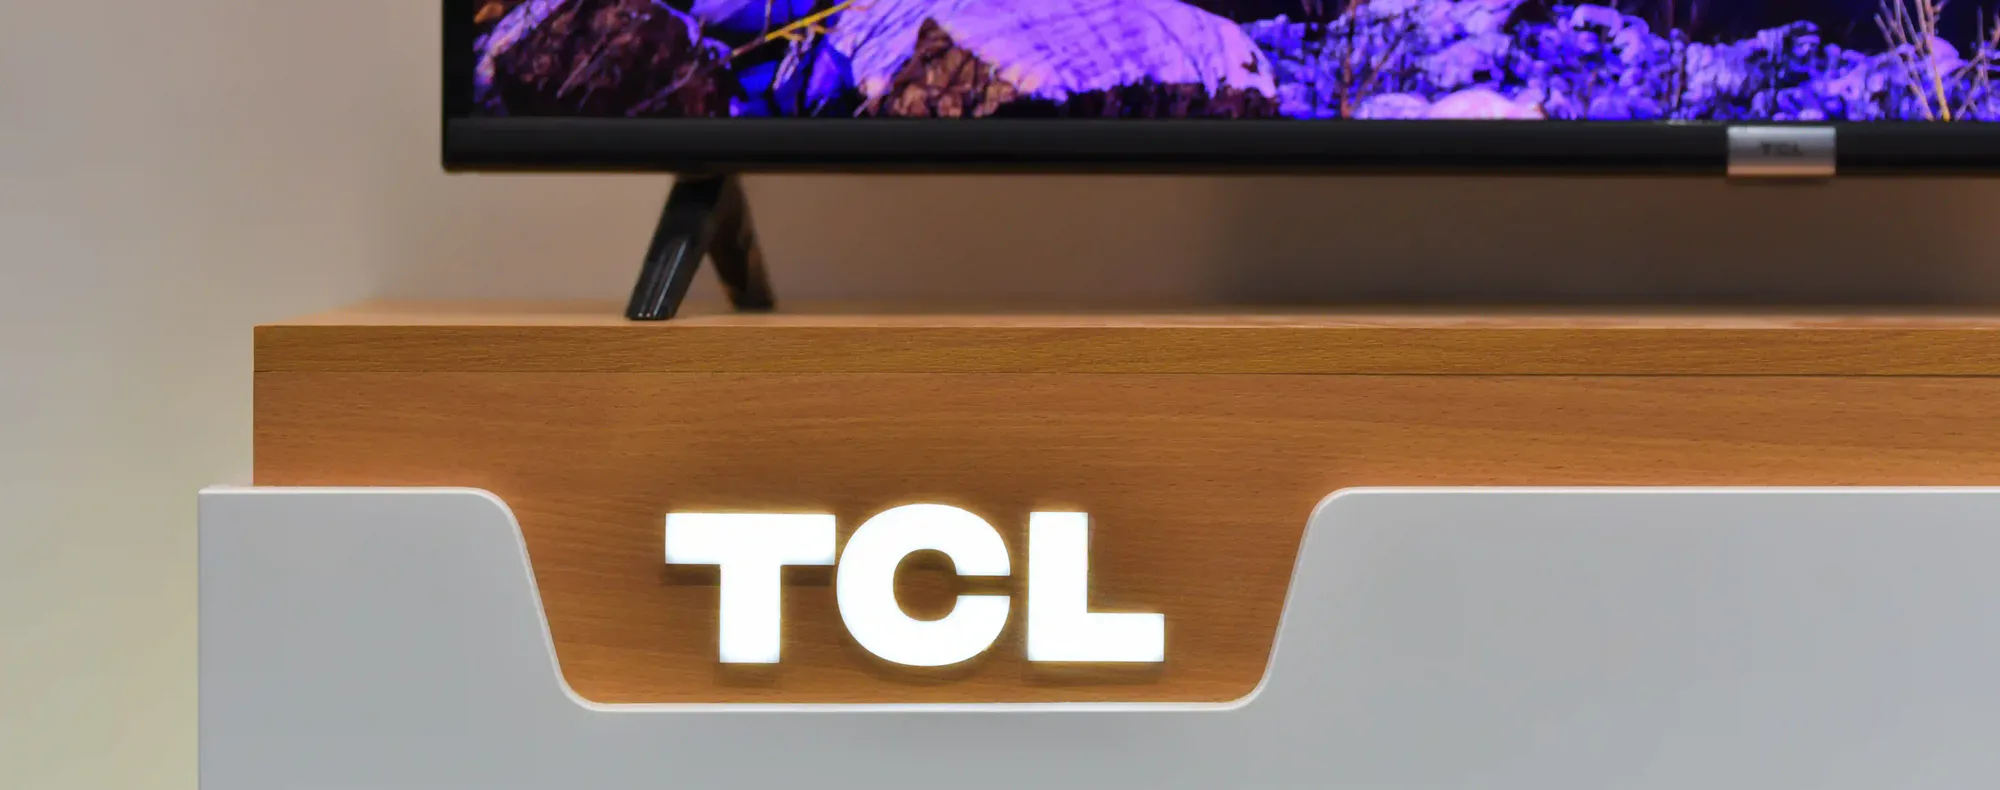 TV TCL é boa? Descubra se os modelos da marca valem a pena